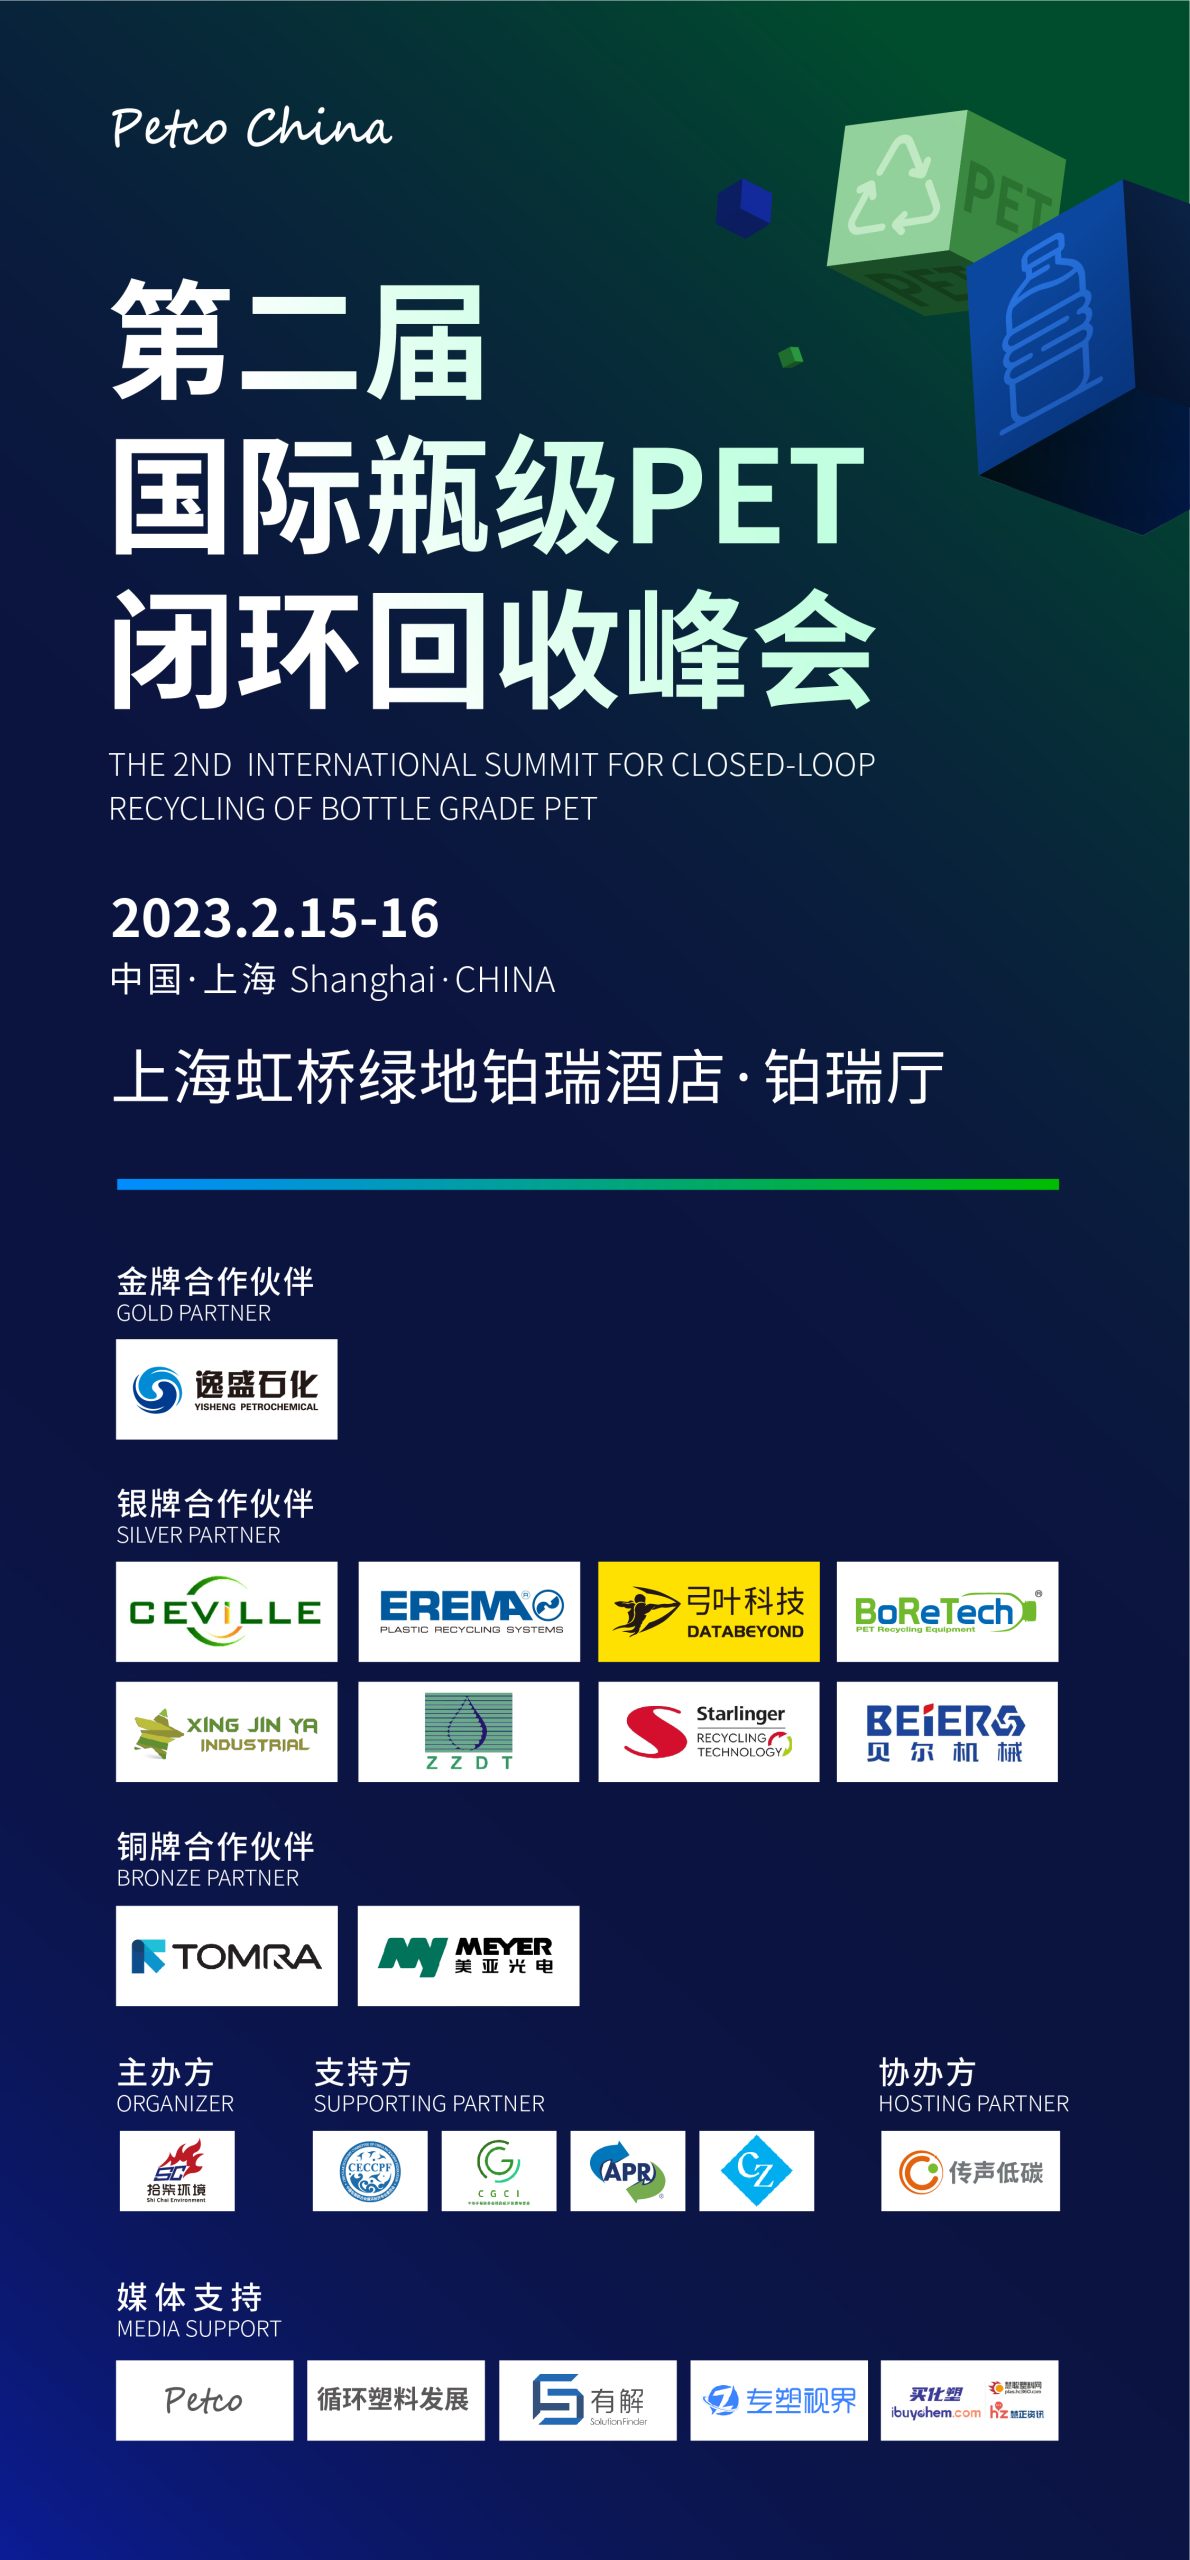 会议报名：第二届国际瓶级PET闭环回收峰会将于2月15日在上海召开 全面打造低碳盛会-有解塑料观察